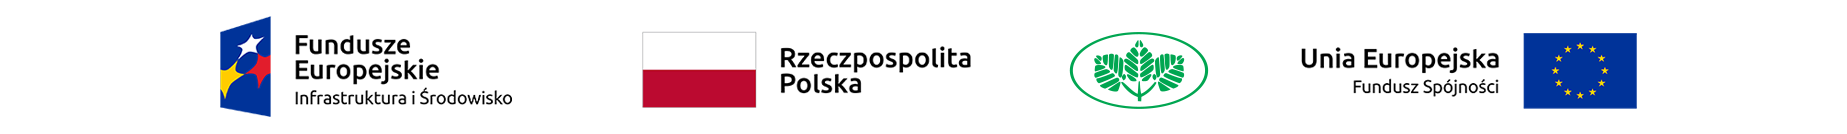 Logotyp informujący o dofinansowaniu zawiera symbole: Fundusze Europejskie Infrastruktura i Środowisko, flaga Polski i napis Rzeczpospolita Polska, symbol trzech zielonych gałązek, Unia Europejska Fundusz Spójności